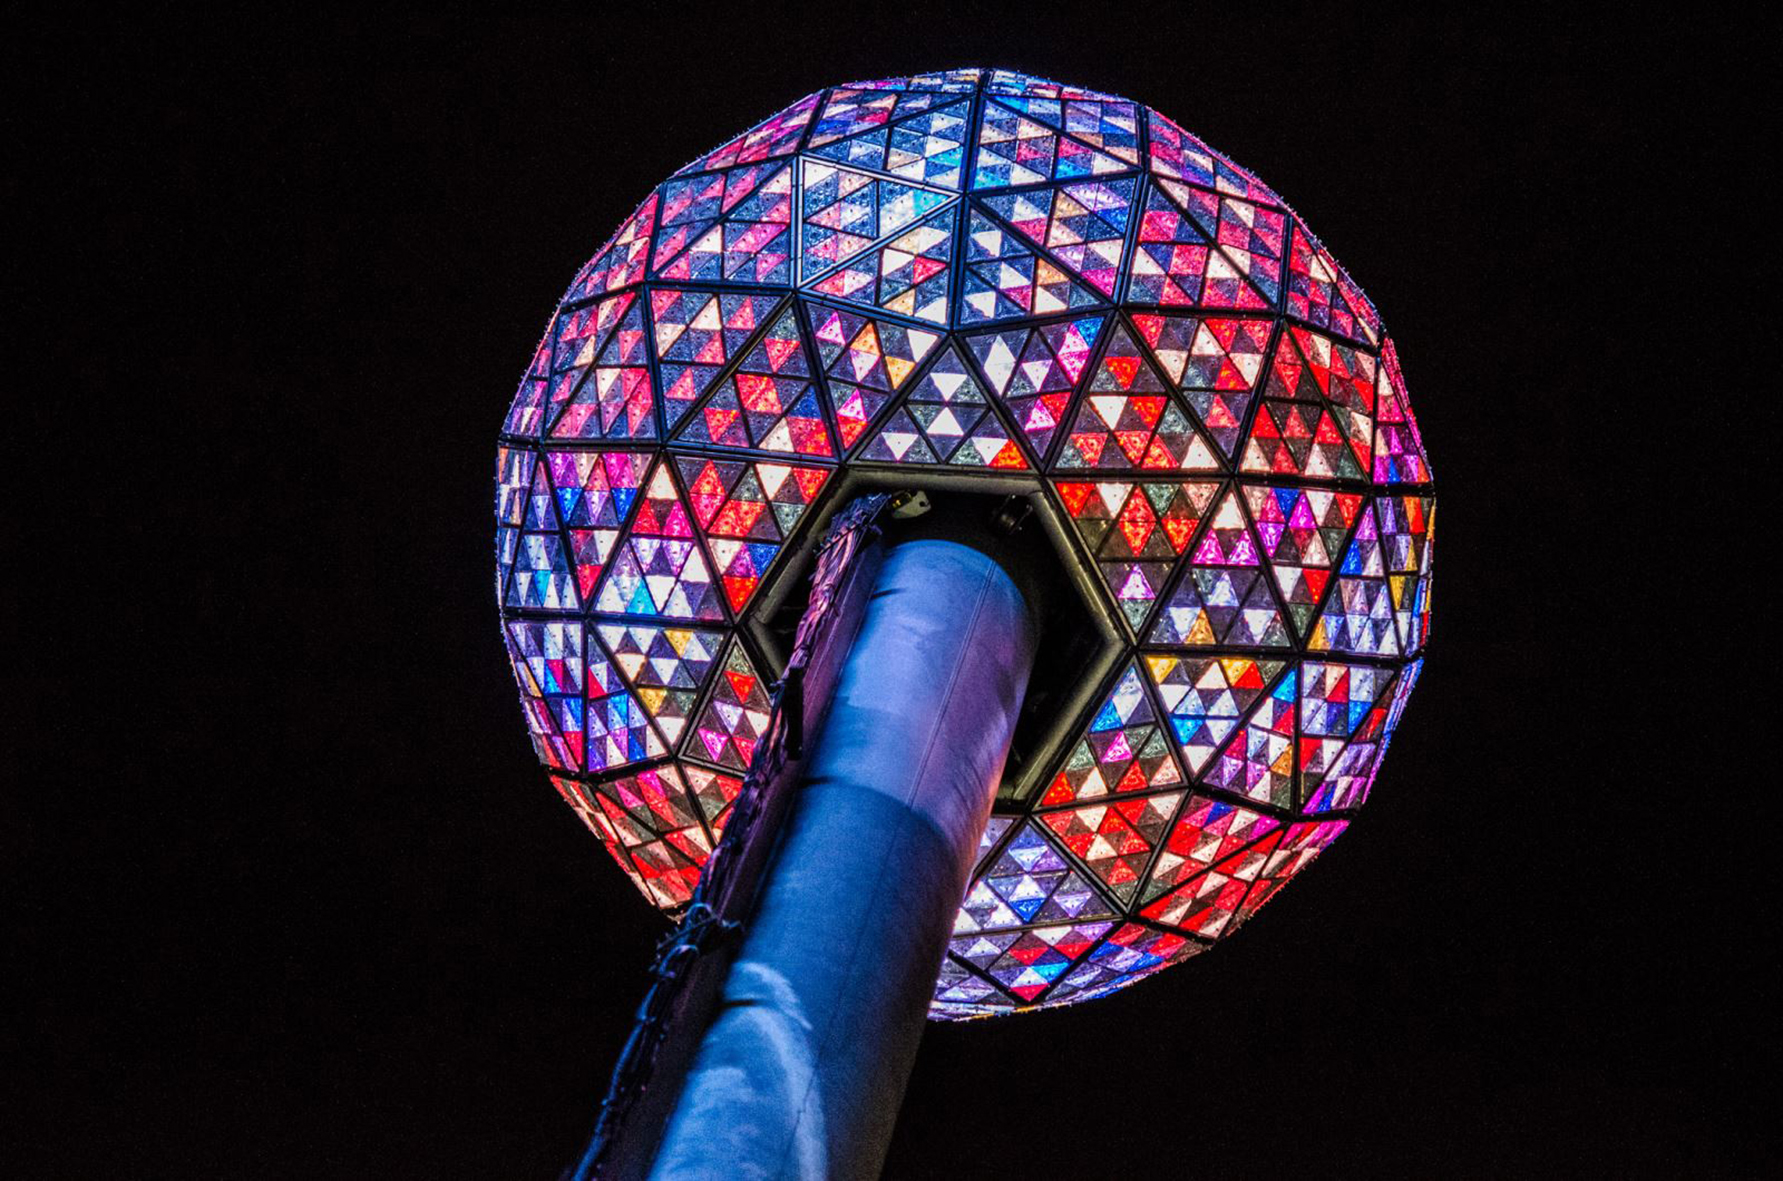  Lễ hạ quả cầu đếm ngược đến năm mới tại Quảng trường Thời Đại (New York - Mỹ).